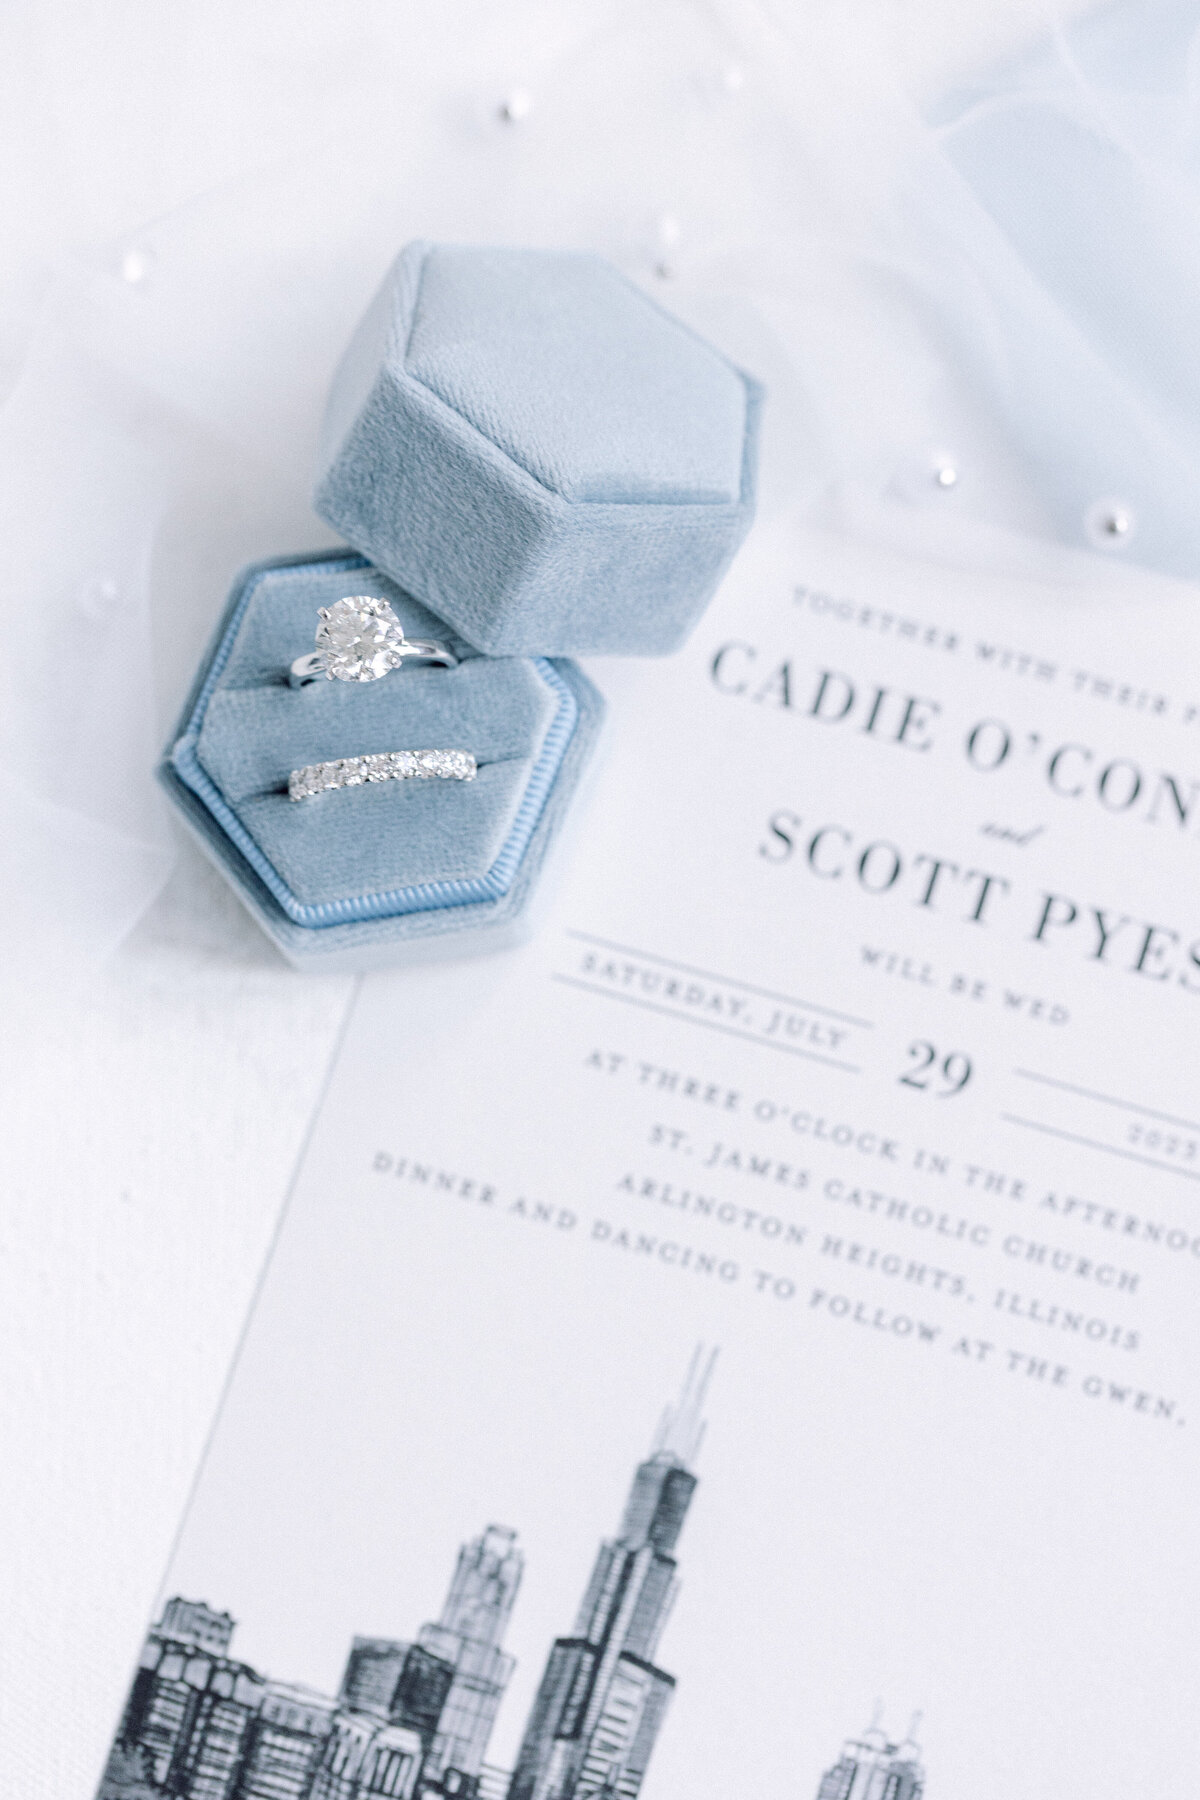 9-cadie-scotty-wedding-8966